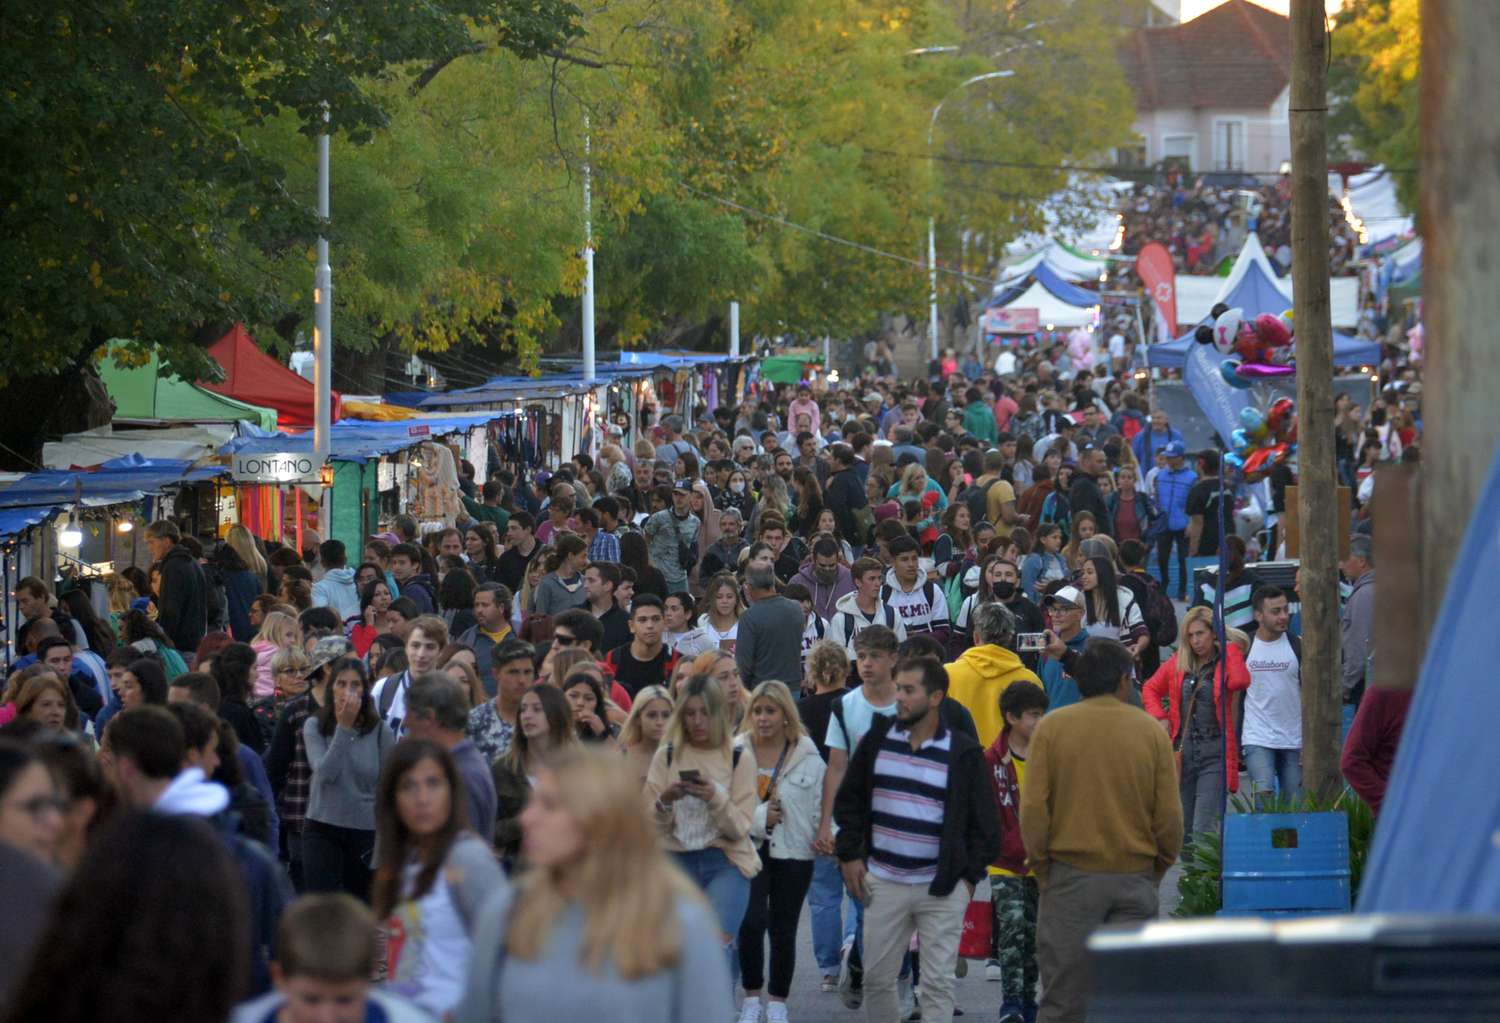 Bajo el sol de otoño, miles de personas recorrieron la Feria Artesanal y la Diagonal fue una fiesta